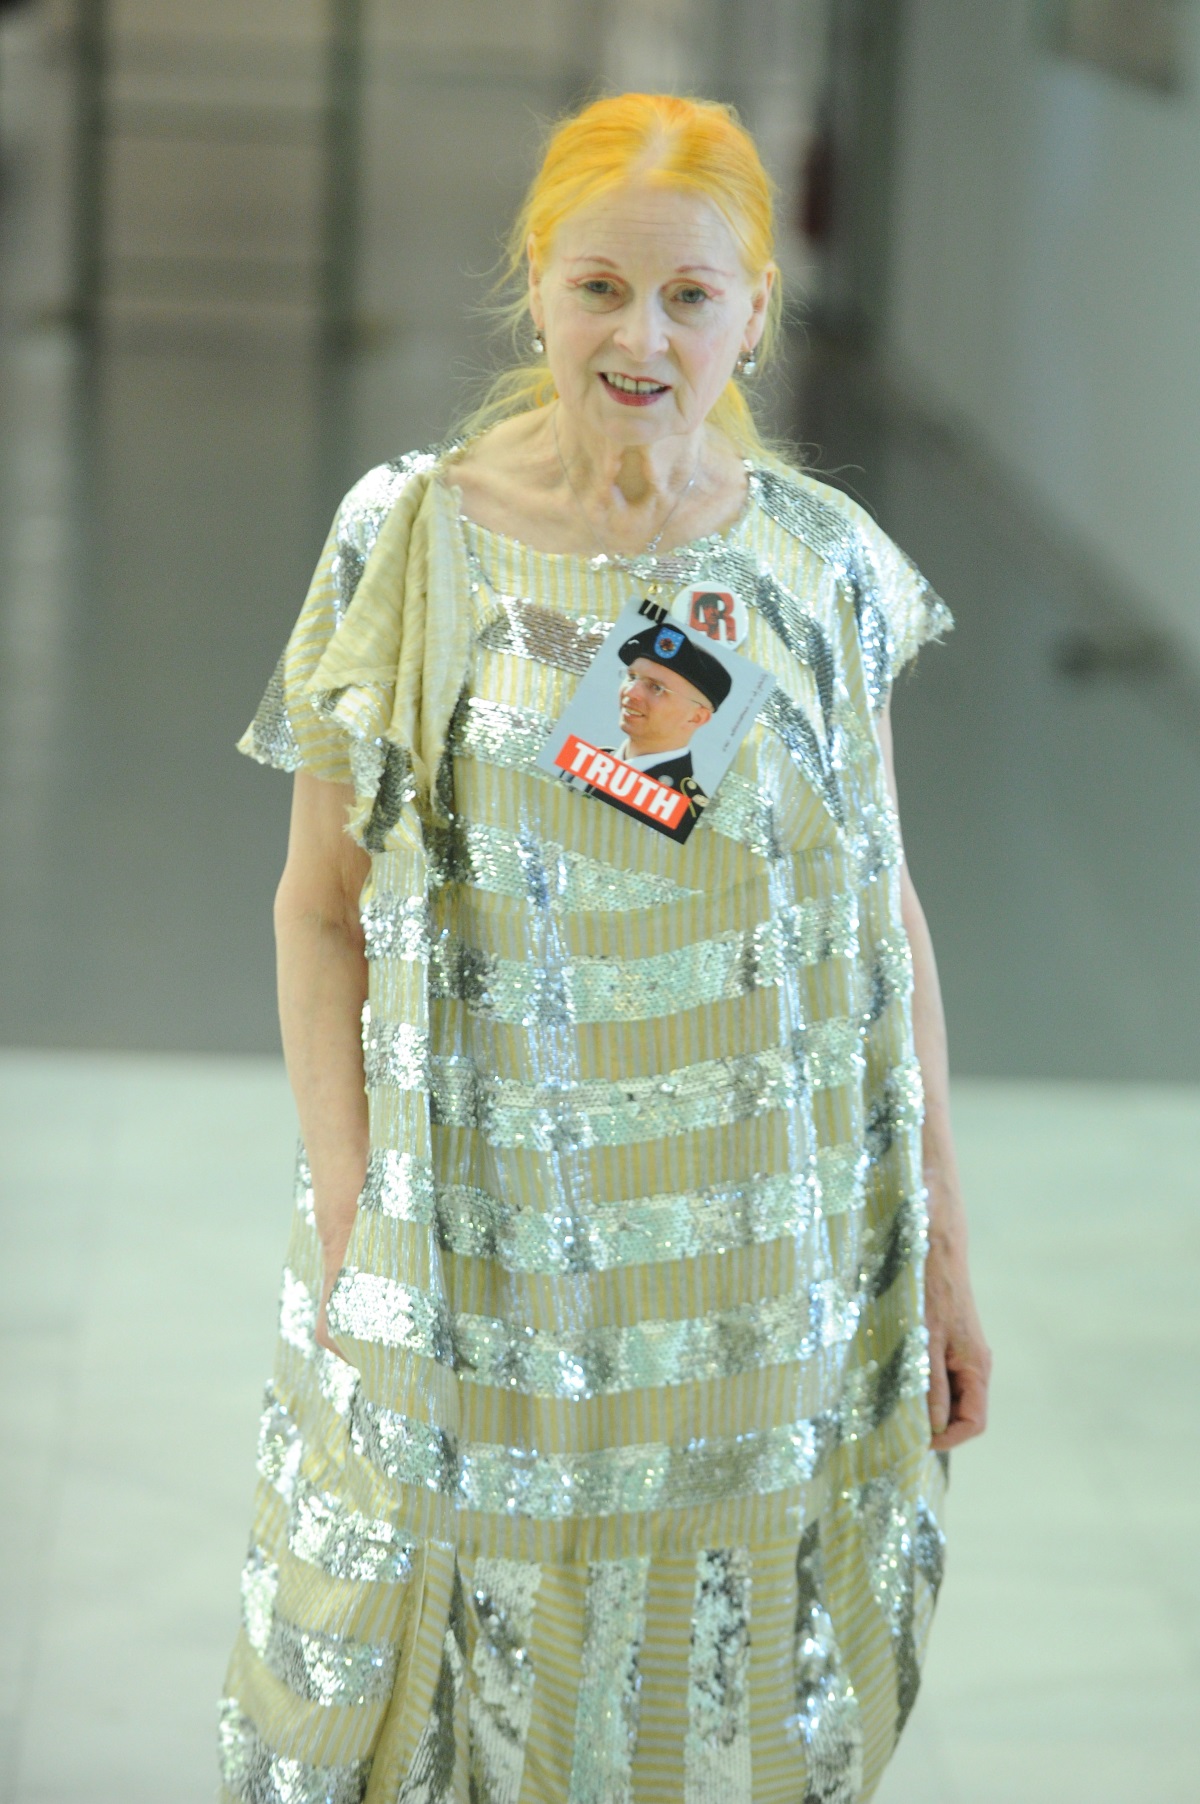 Вивиан Уестууд беше на Седмицата на модата в Париж, където съпругът ѝ и творчески директор на нейния бранд Андреас Кронталер представи новата си колекция. Запитана от журналист "Какво прави, за да изглежда толкова млада?", тя отговори: "Не се мия прекалено често".